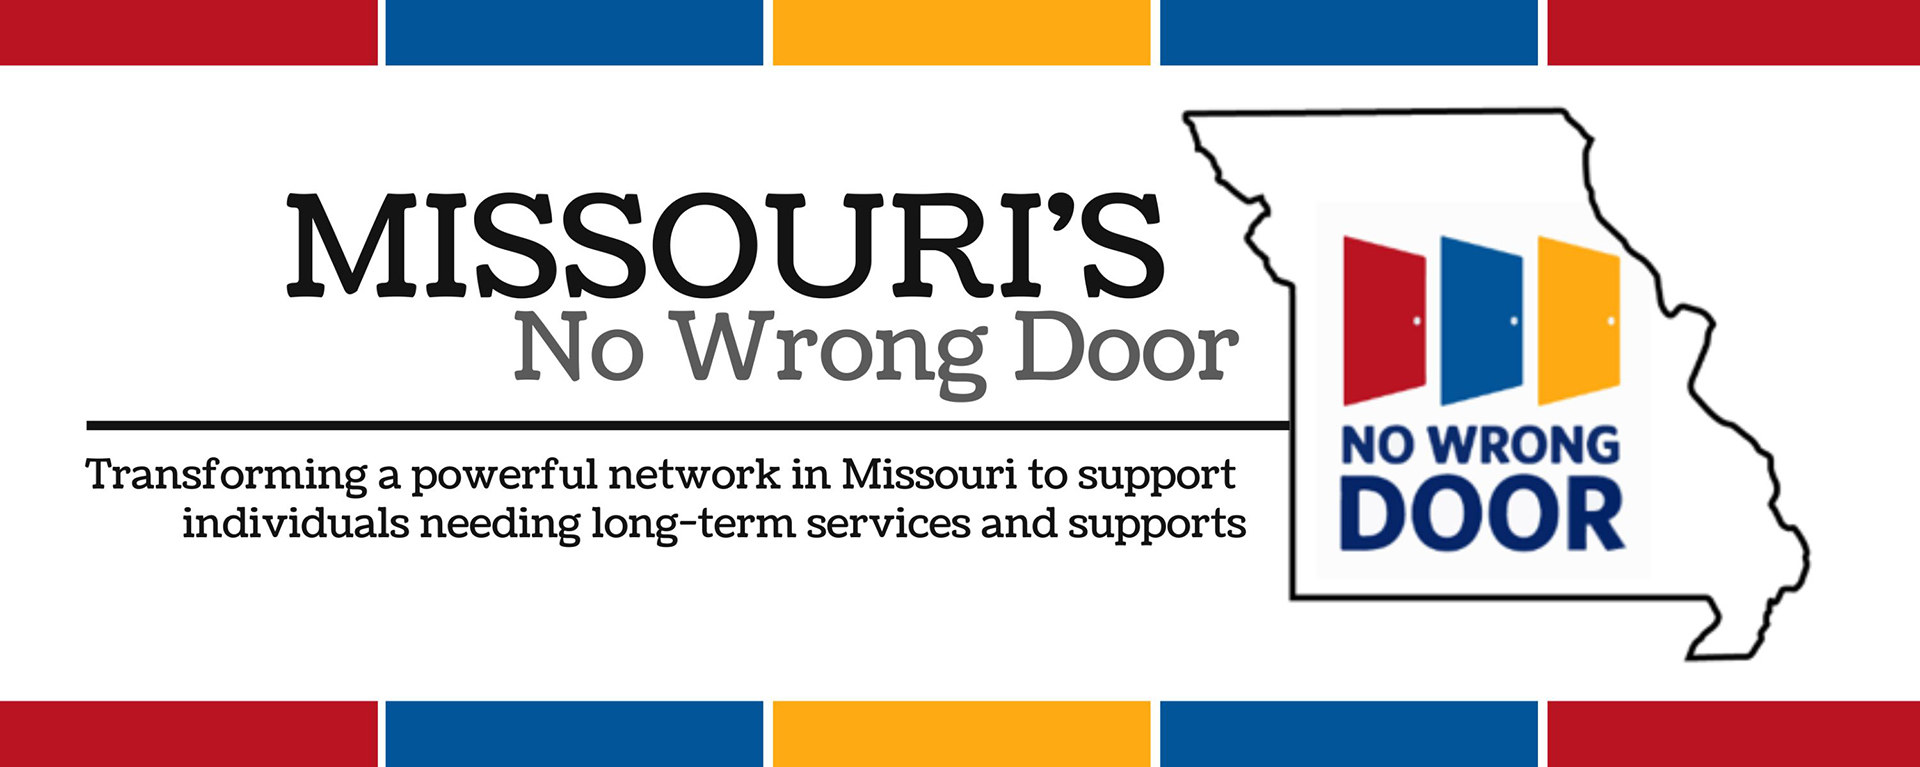 Missouri's No Wrong Door